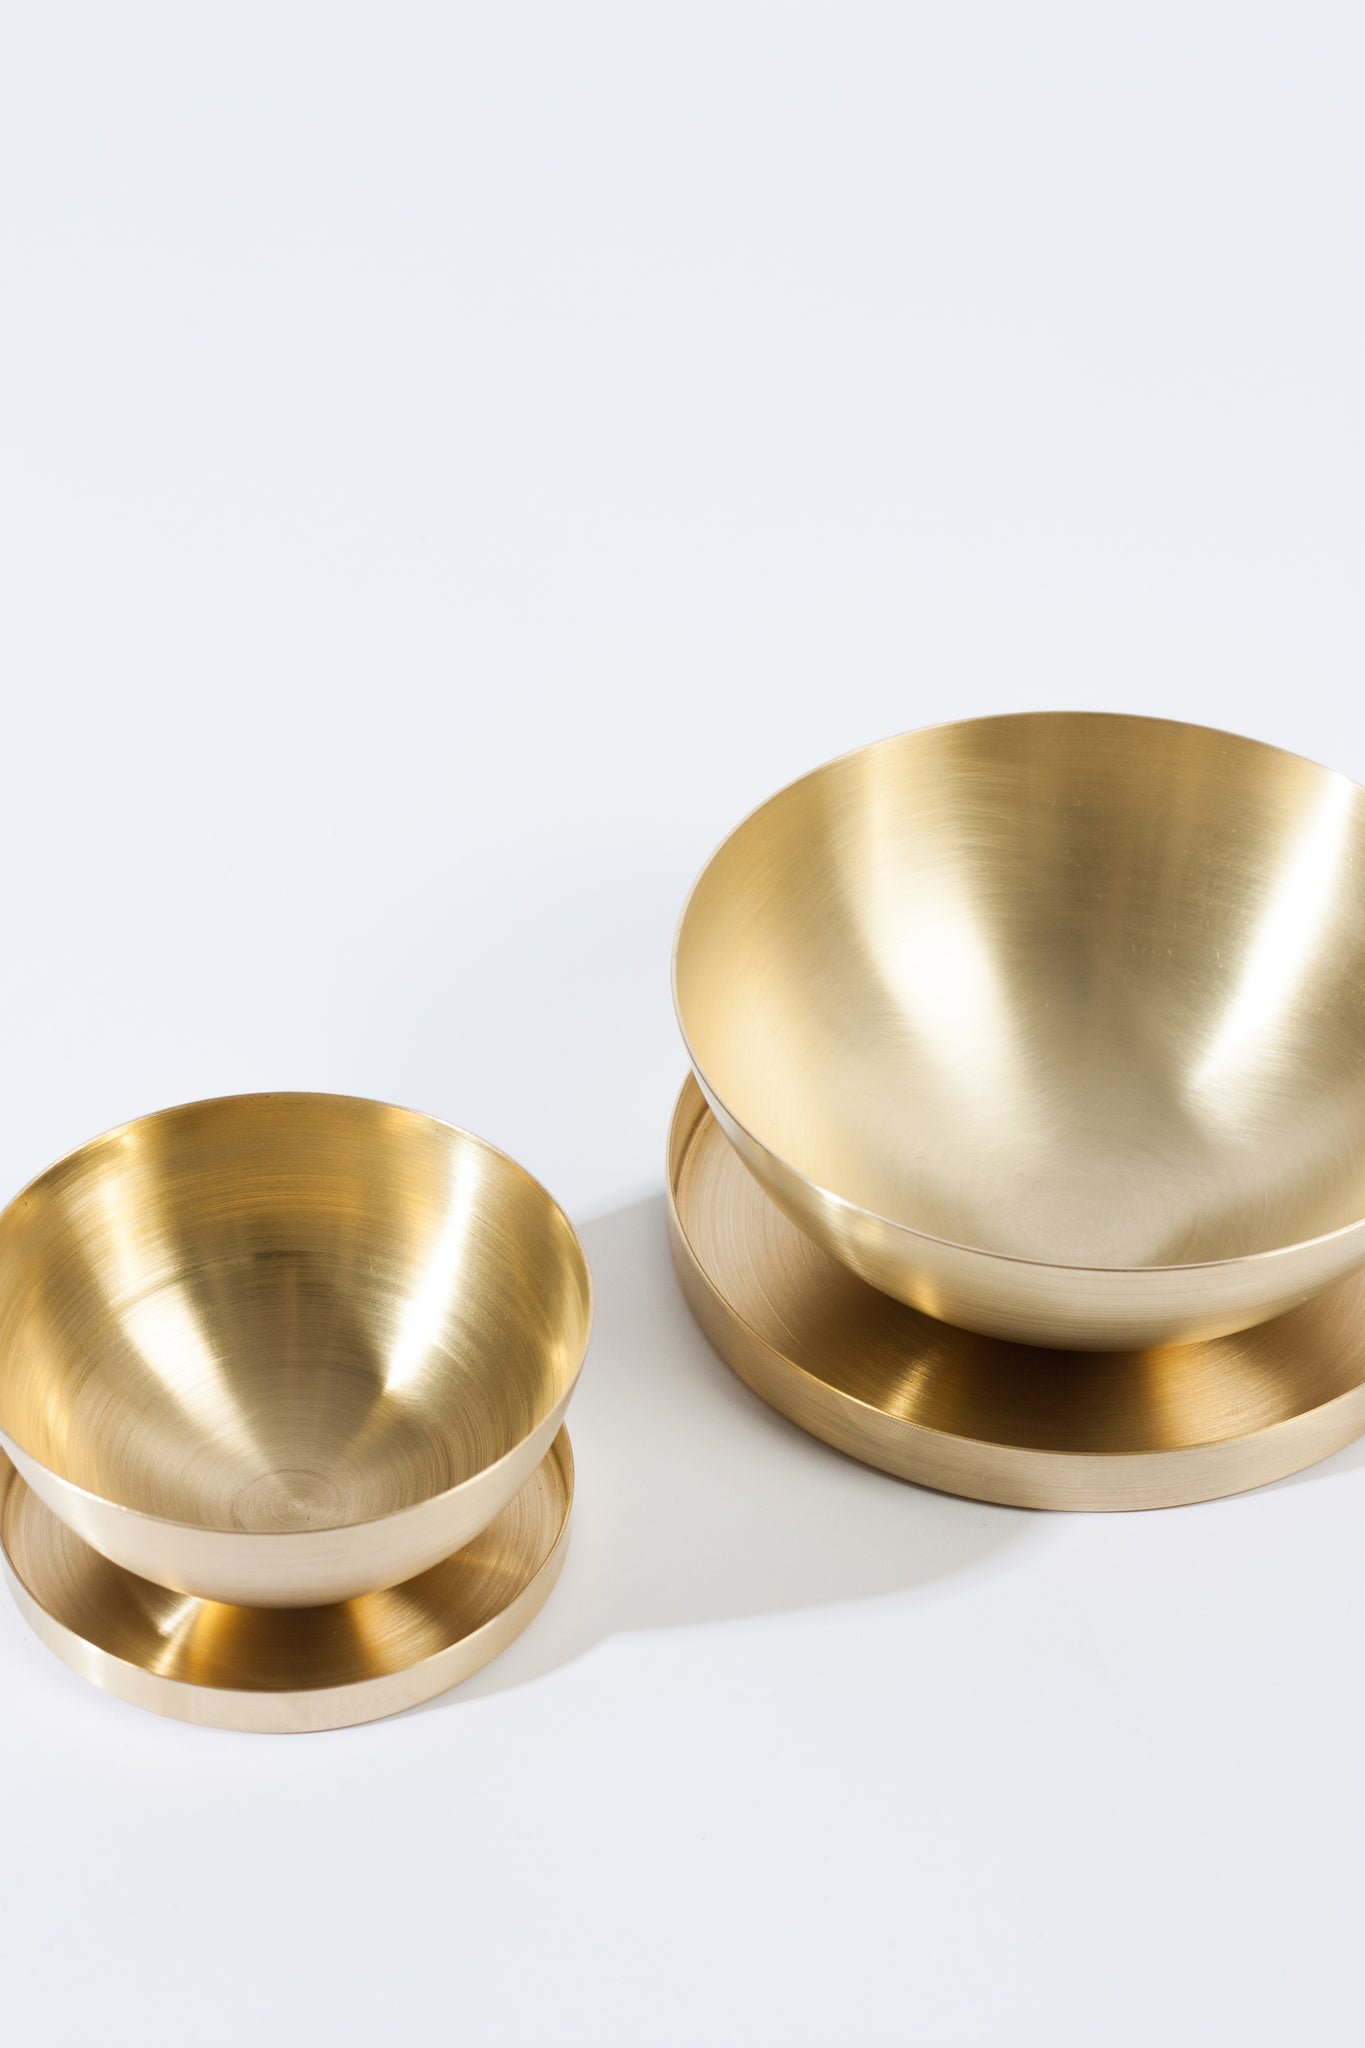 100mm Bowl - Spun Brass